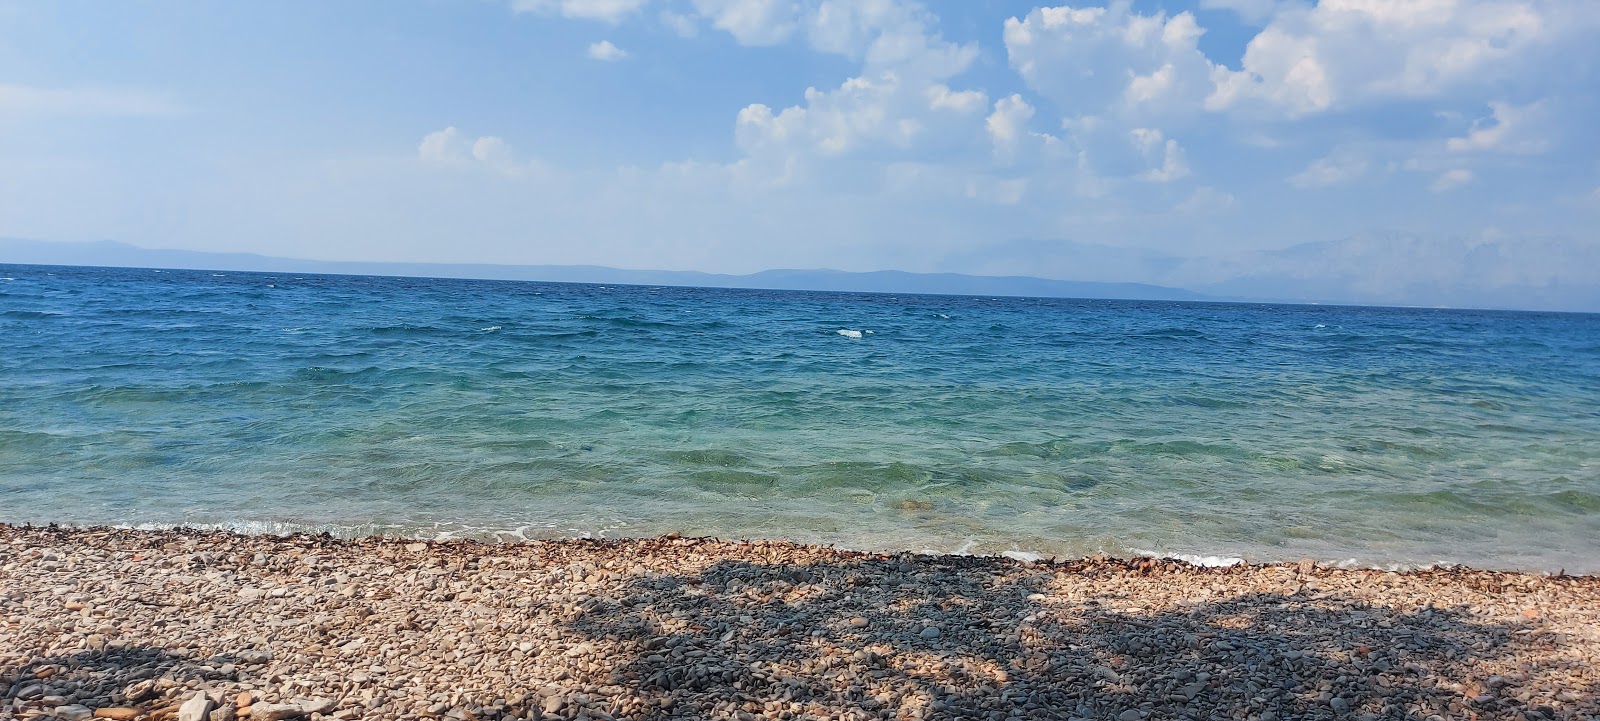 Salpa beach'in fotoğrafı doğrudan plaj ile birlikte